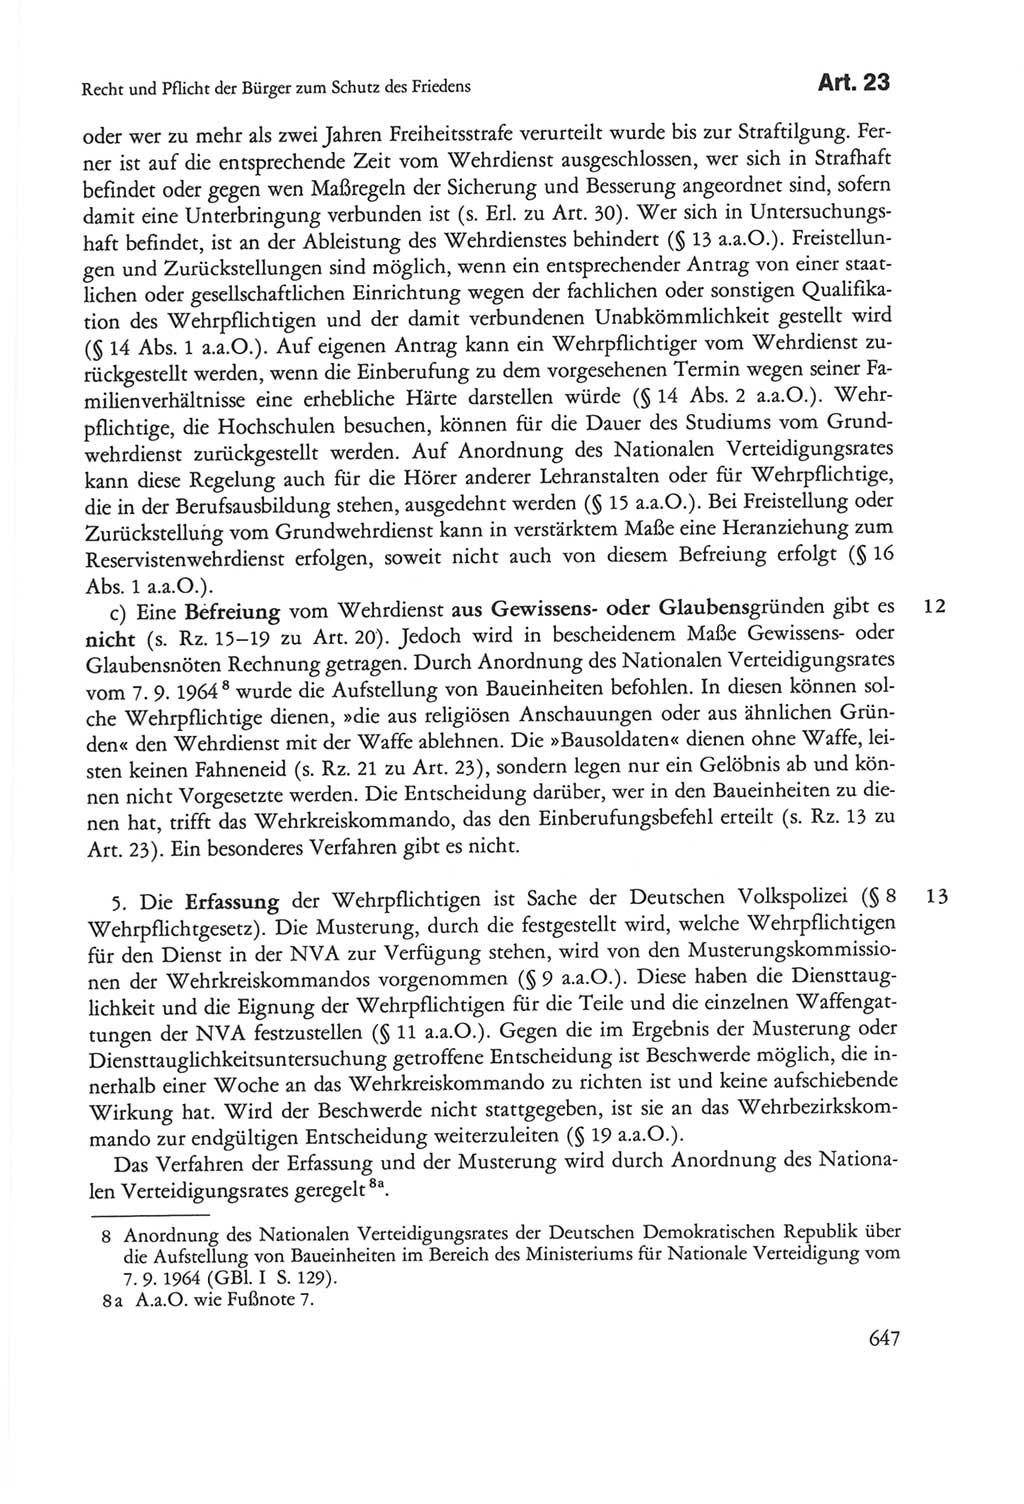 Die sozialistische Verfassung der Deutschen Demokratischen Republik (DDR), Kommentar mit einem Nachtrag 1997, Seite 647 (Soz. Verf. DDR Komm. Nachtr. 1997, S. 647)